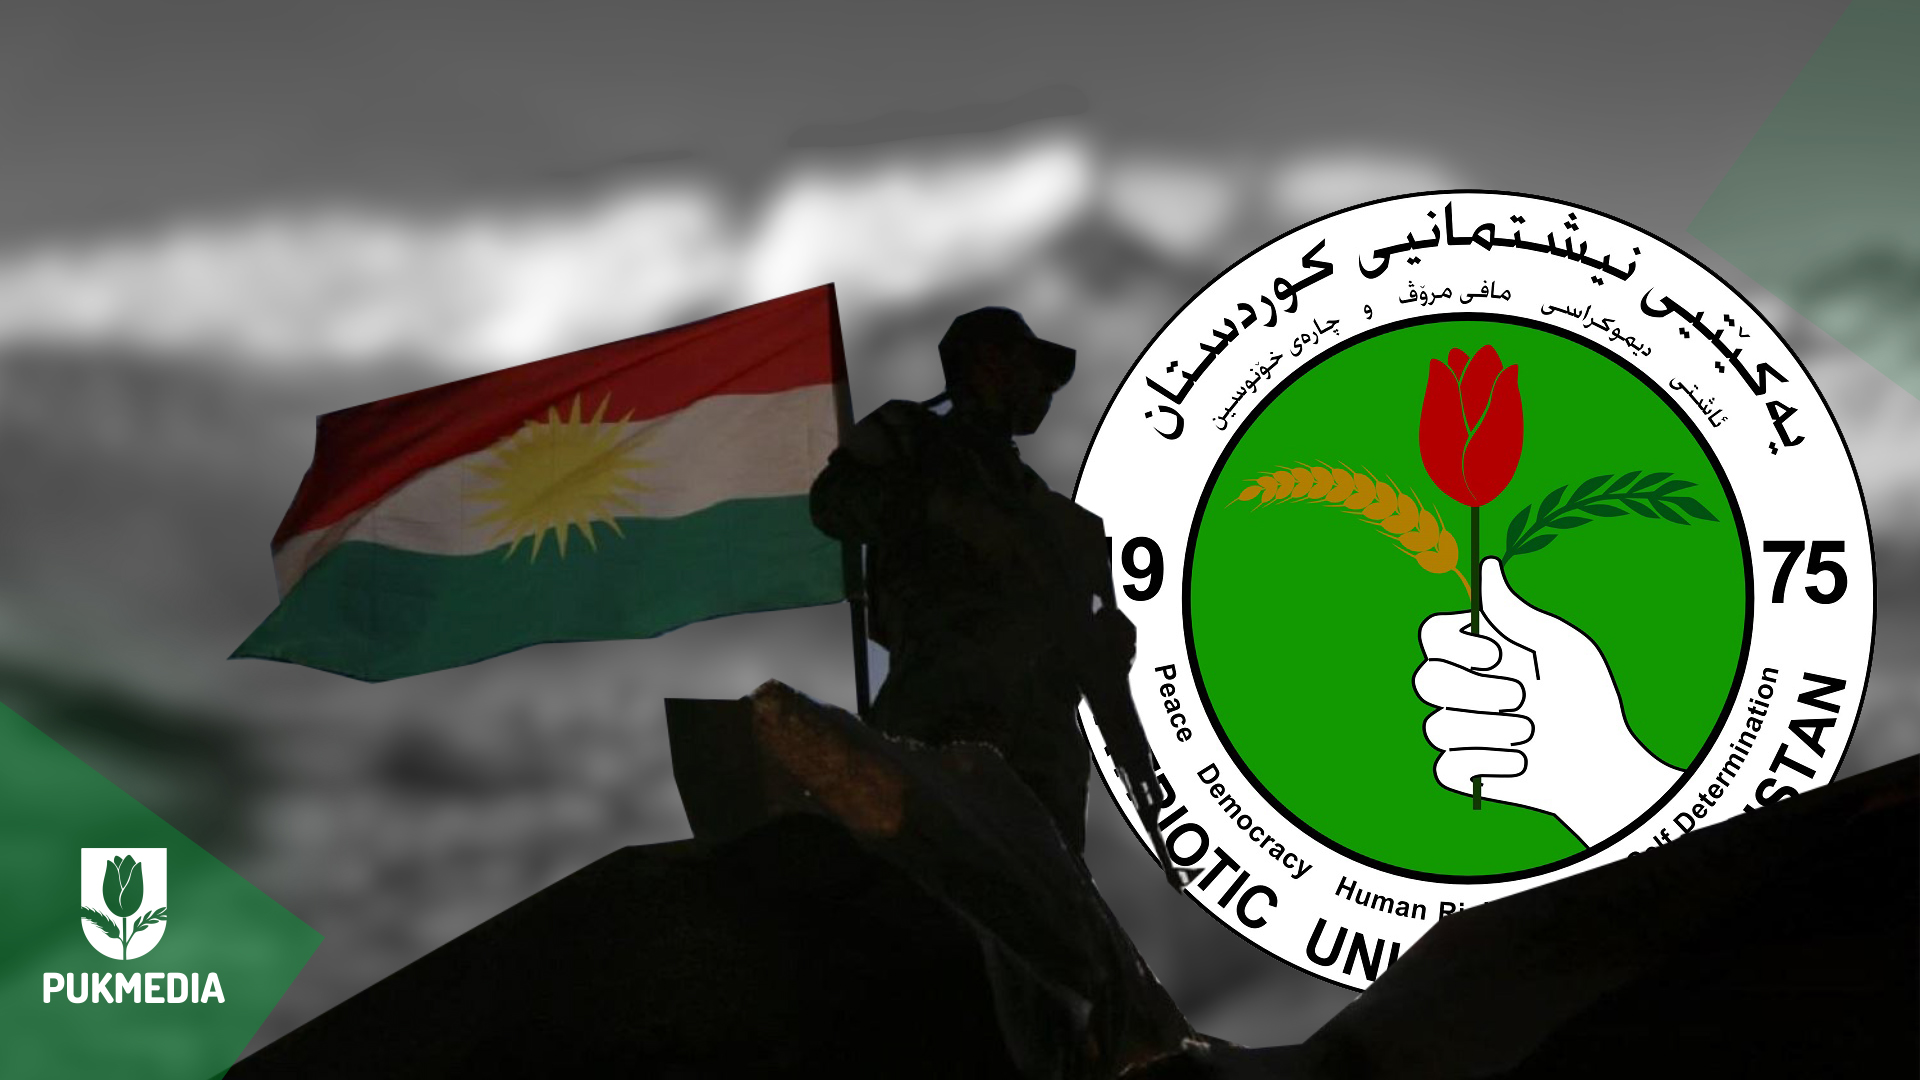  Kurdistan flag, a Peshmerga, and PUK logo.